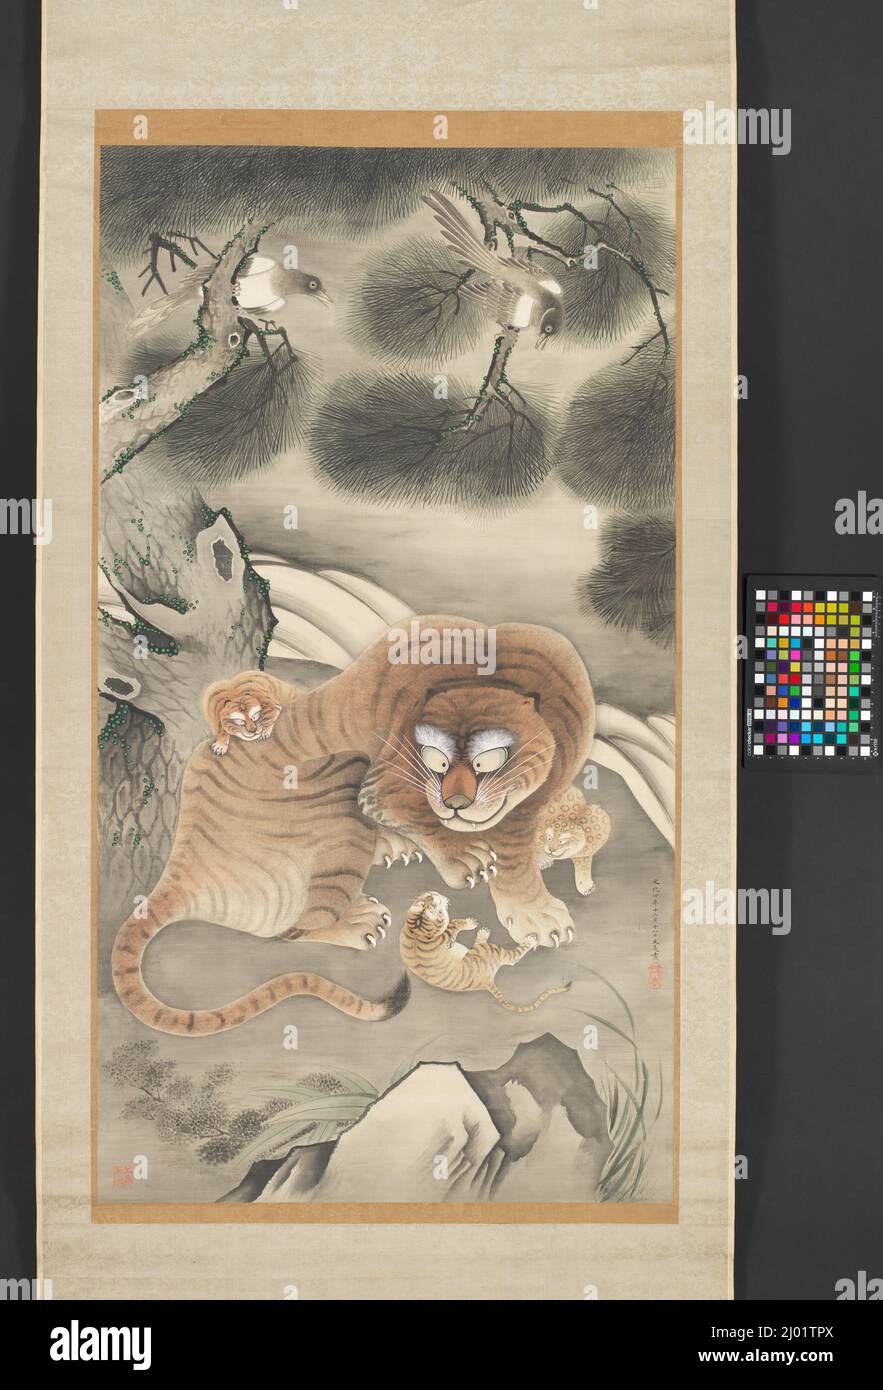 Famiglia Tiger e Magpies. Tani Bunchō (Giappone, 1763-1840). 1807 (Bunka 4, 12th mesi, 18th giorni). Quadri; scorre. Rotolo sospeso; inchiostro e colore su seta Foto Stock